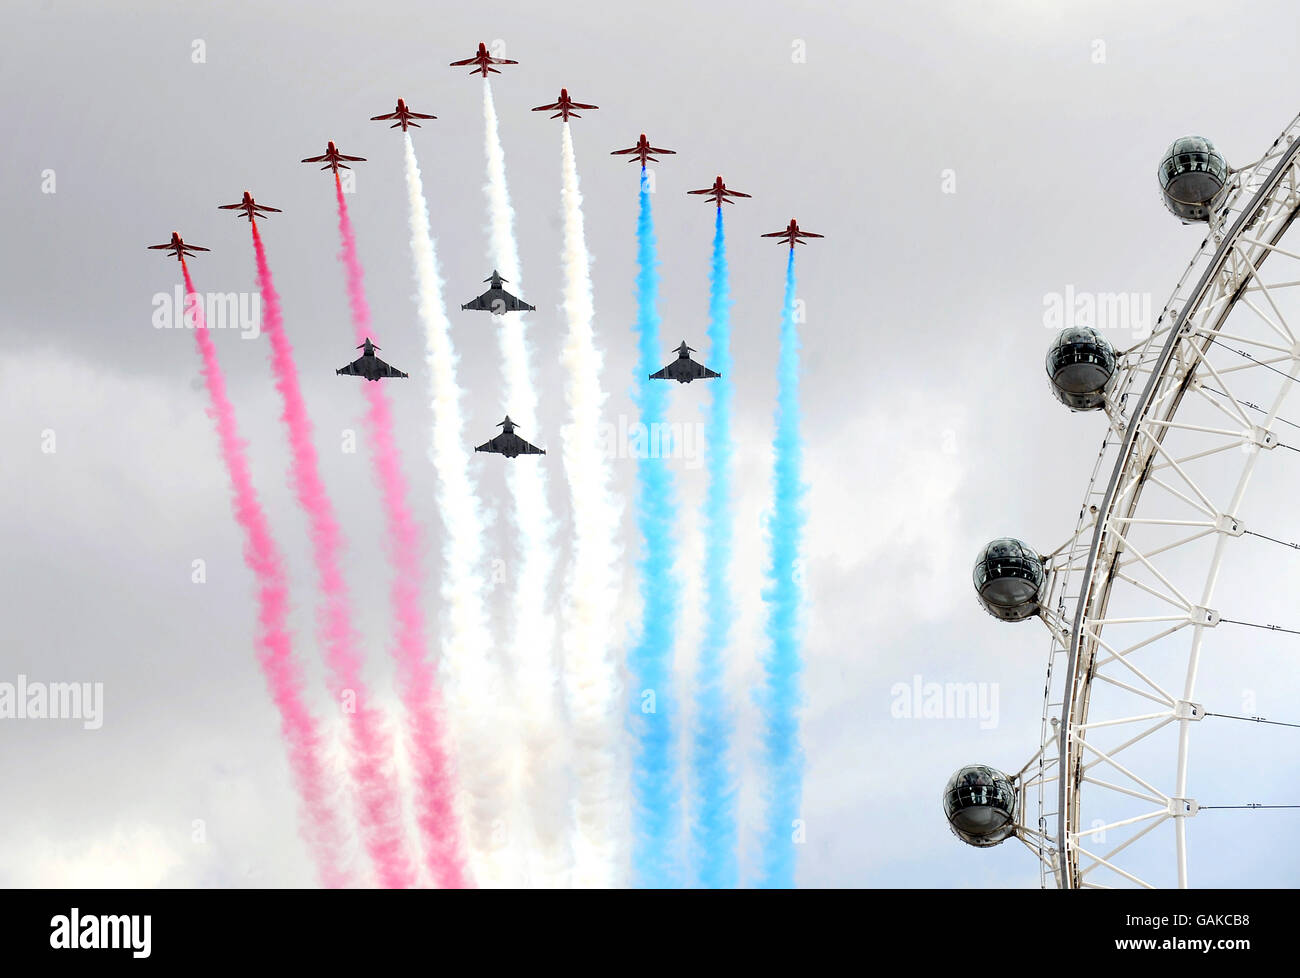 Die Red Arrows in Formation mit vier Taifun-Flugzeugen fliegen über London, um den 90. Jahrestag der Royal Air Force zu feiern. Stockfoto